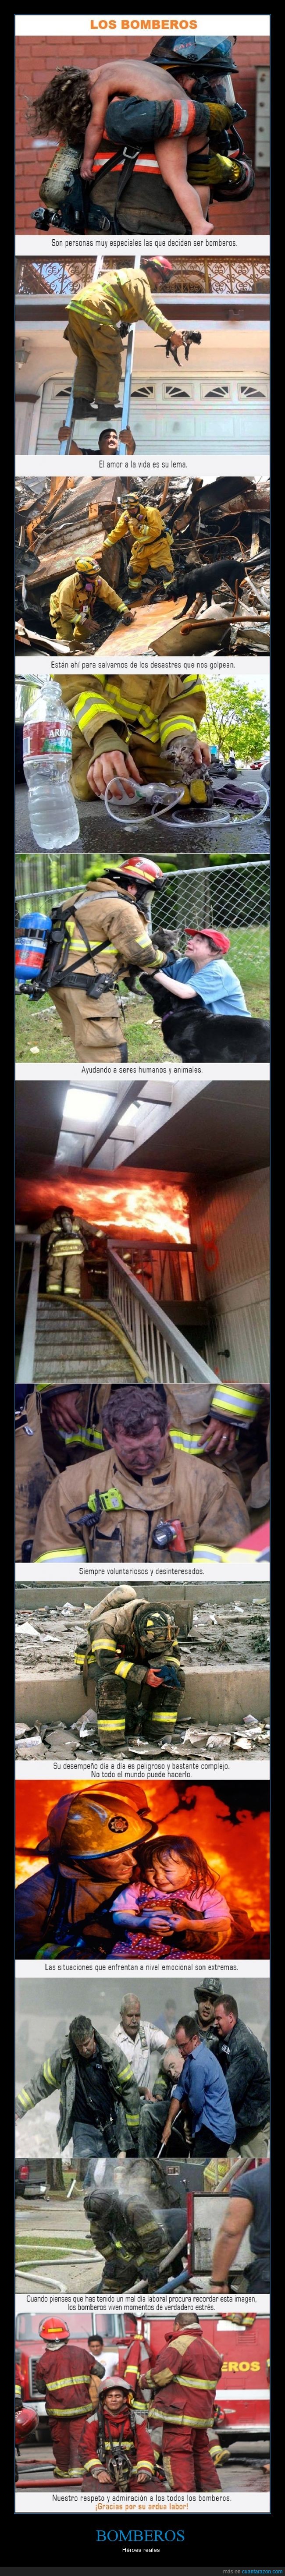 los_bomberos_gracias